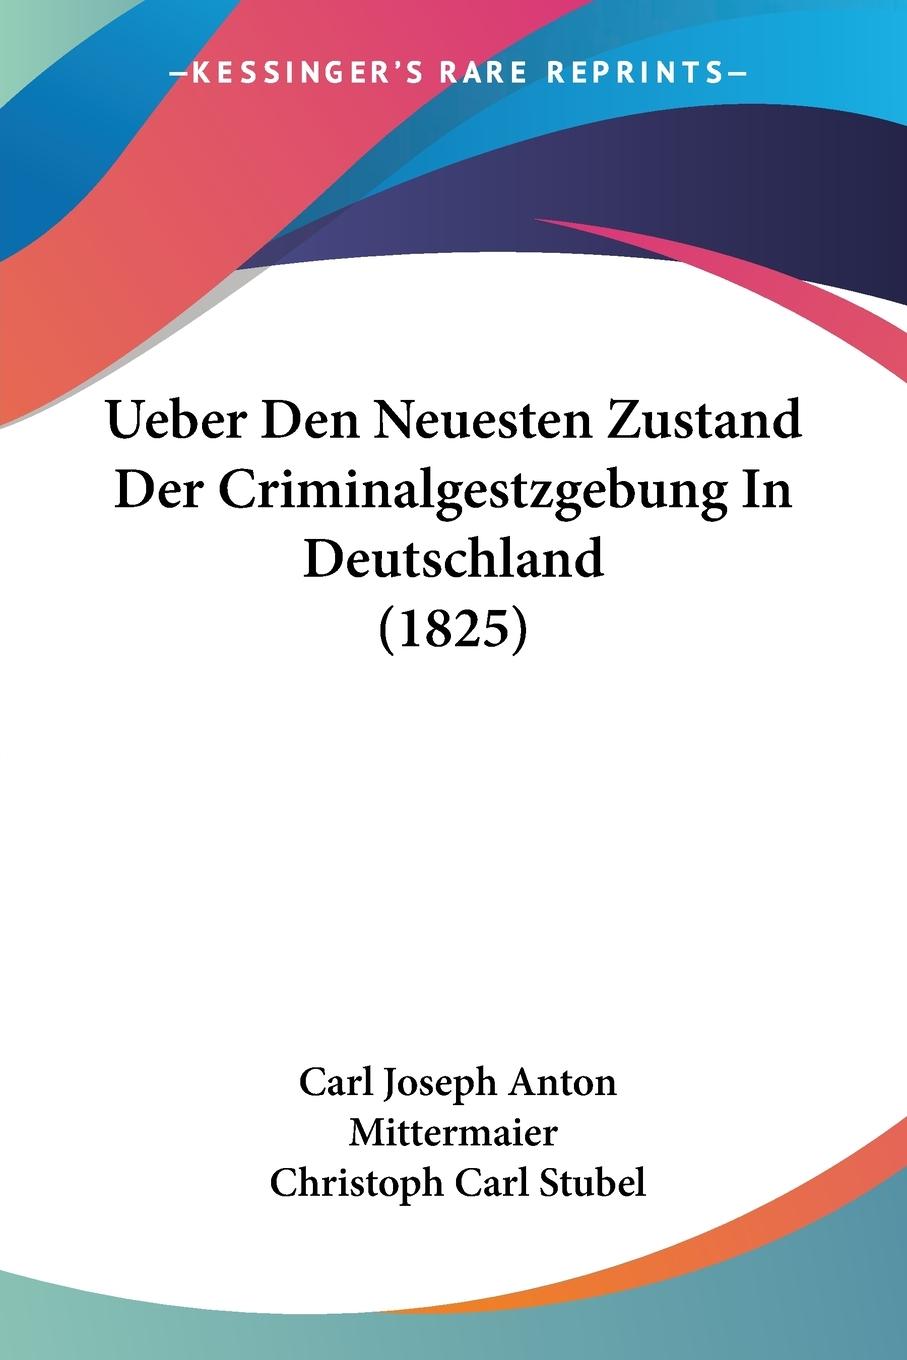 Ueber Den Neuesten Zustand Der Criminalgestzgebung In Deutschland (1825) - Mittermaier, Carl Joseph Anton Stubel, Christoph Carl